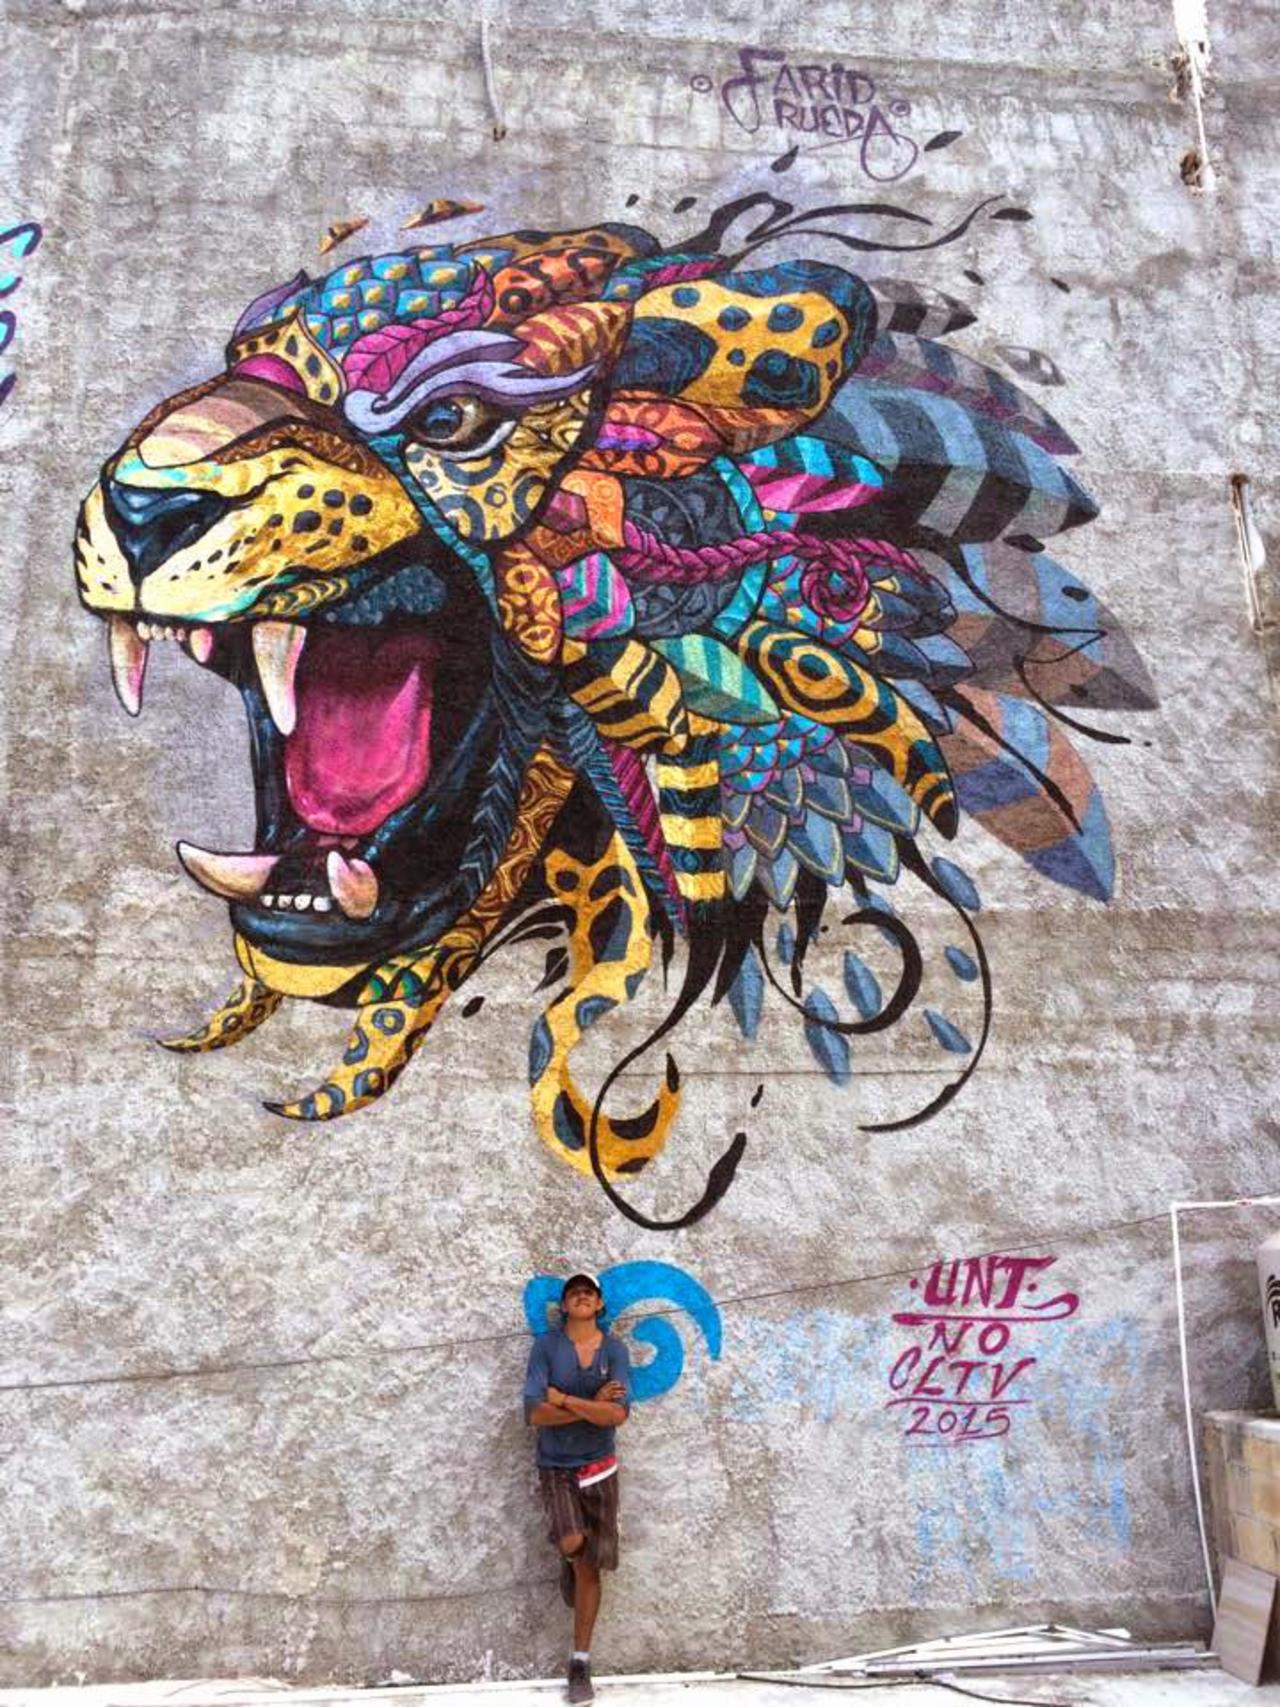 RT @streetartscout: Farid Rueda – Playa Del Carmen, Mexico http://designsalp.com/2015/05/04/the-10-most-popular-street-art-pieces-of-april-2015 … via @designsalp #streetart #mexico #graffiti #mural http://t.co/nusiVYddy5